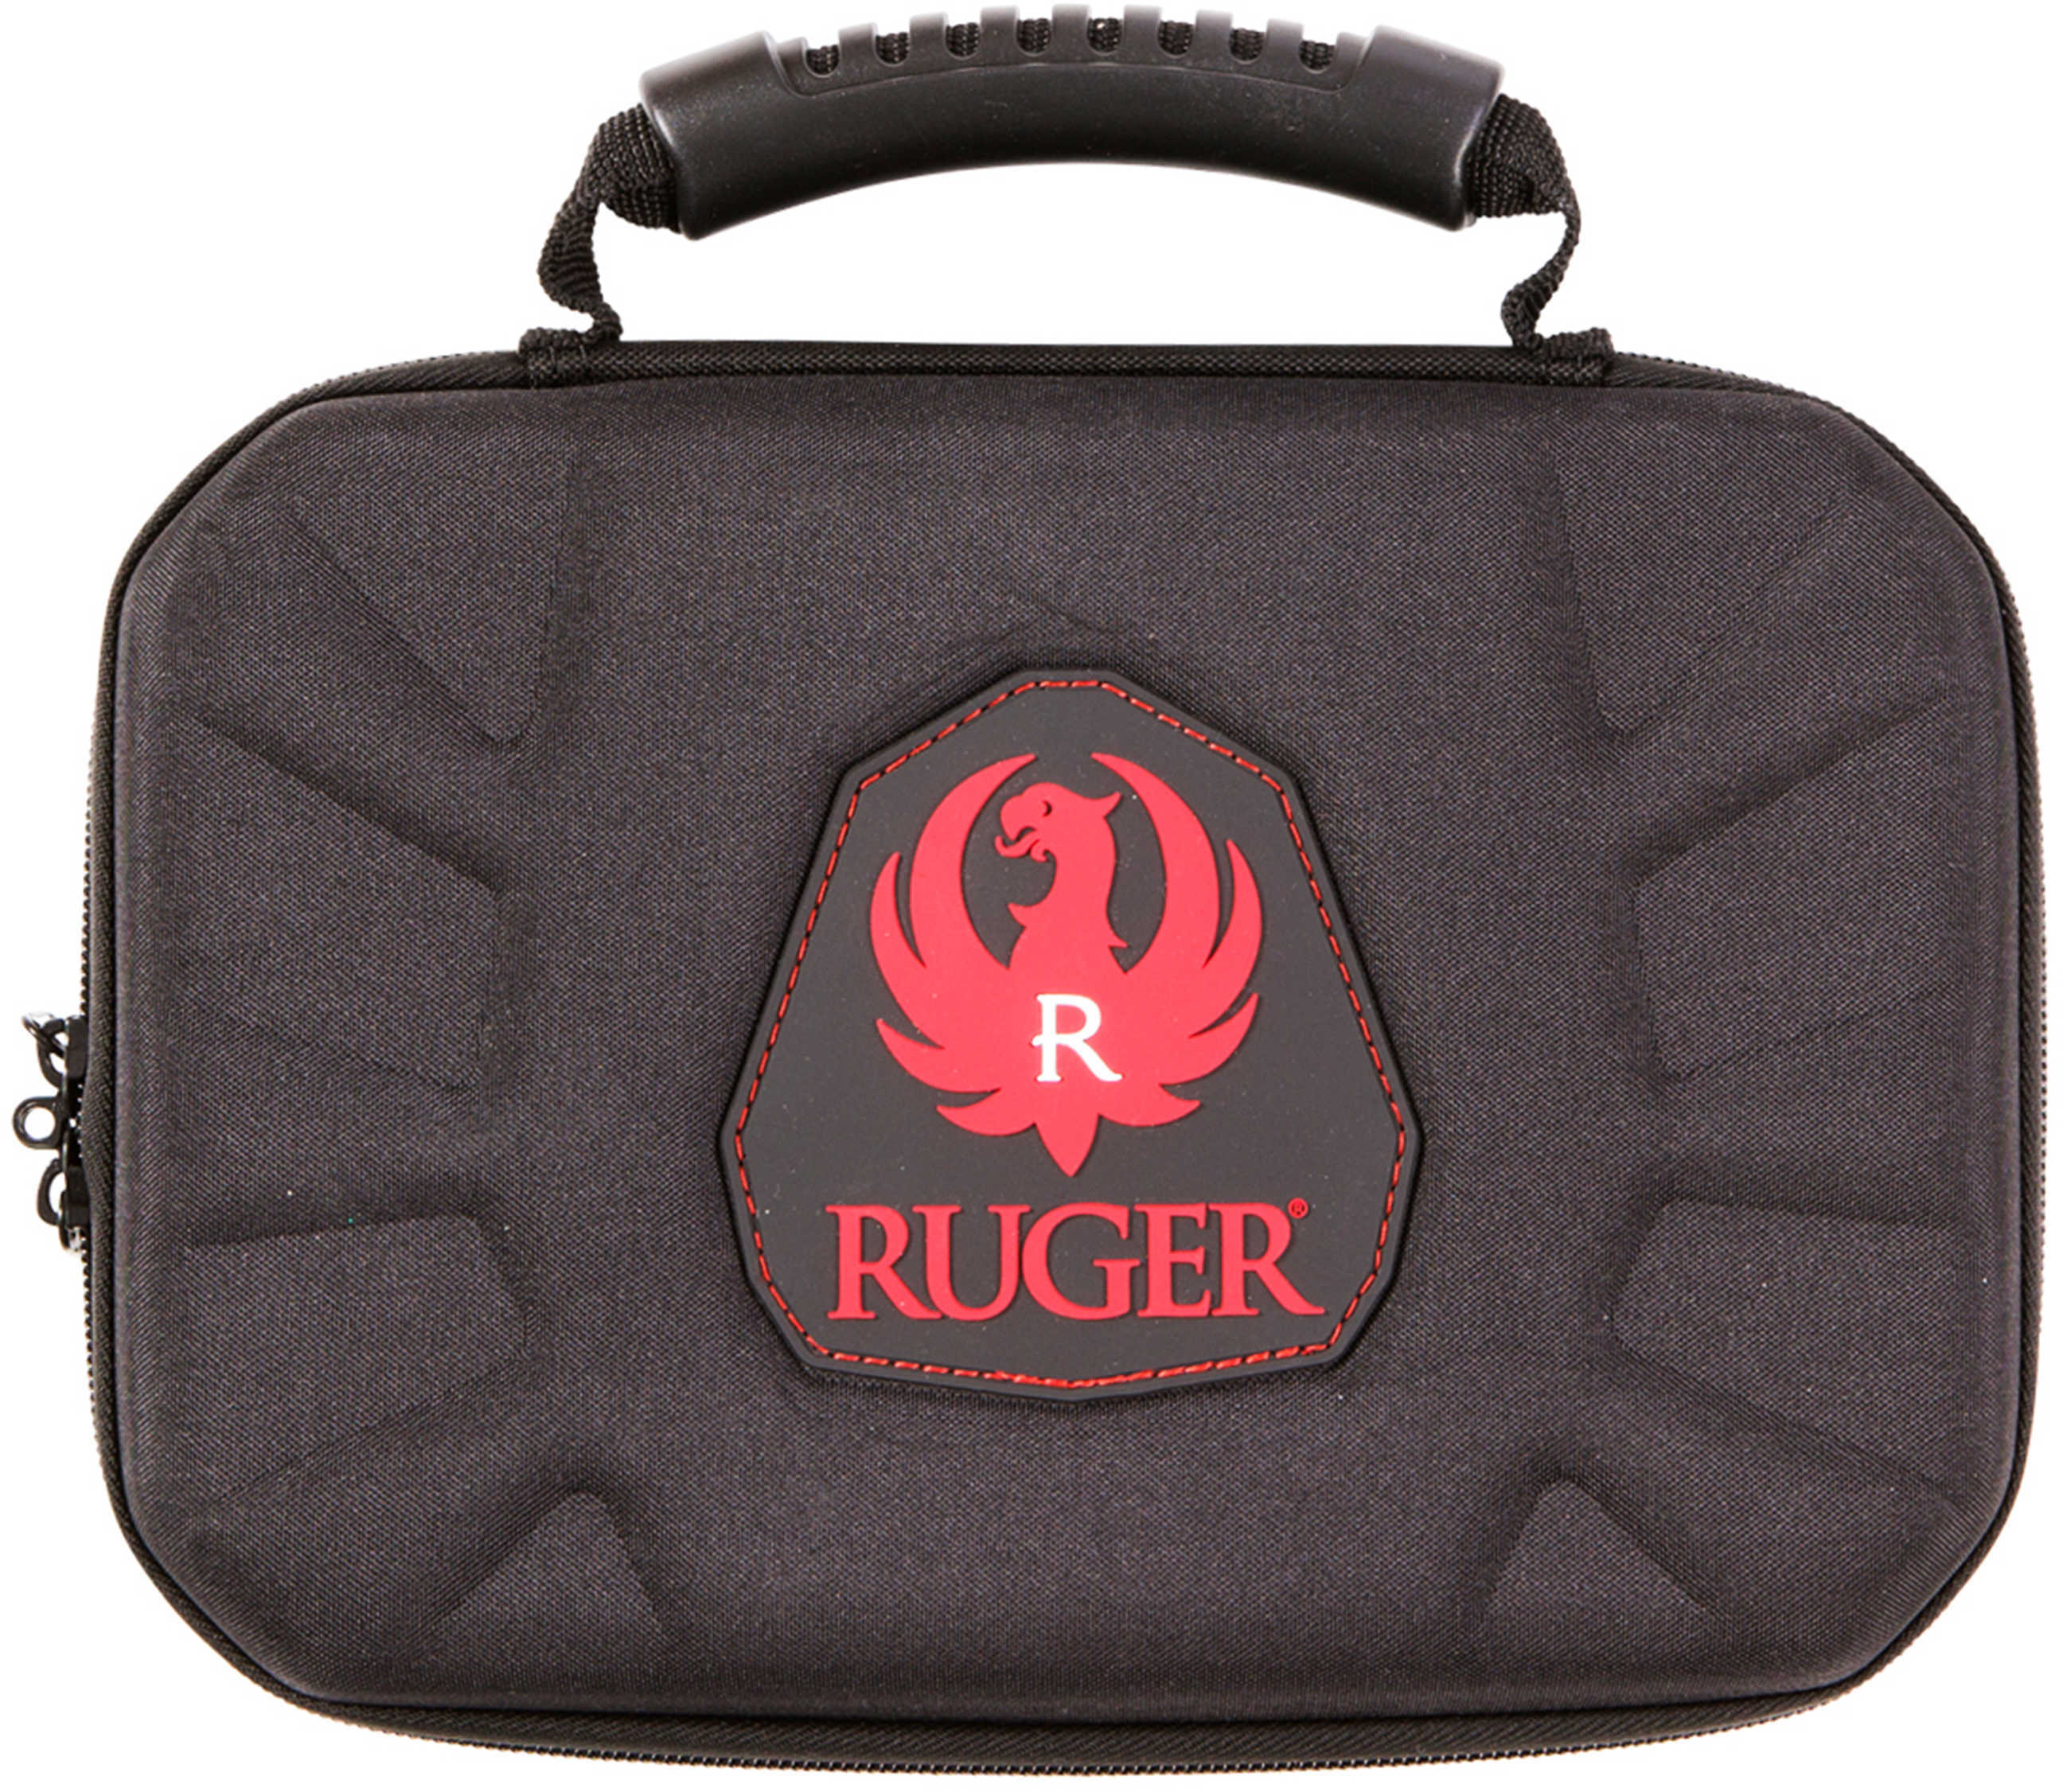 Allen 27312 Ruger Blockade 12" Handgun Case Nylon Black with Red Rugger Logo 12.5" x 8.5" x 2.25"